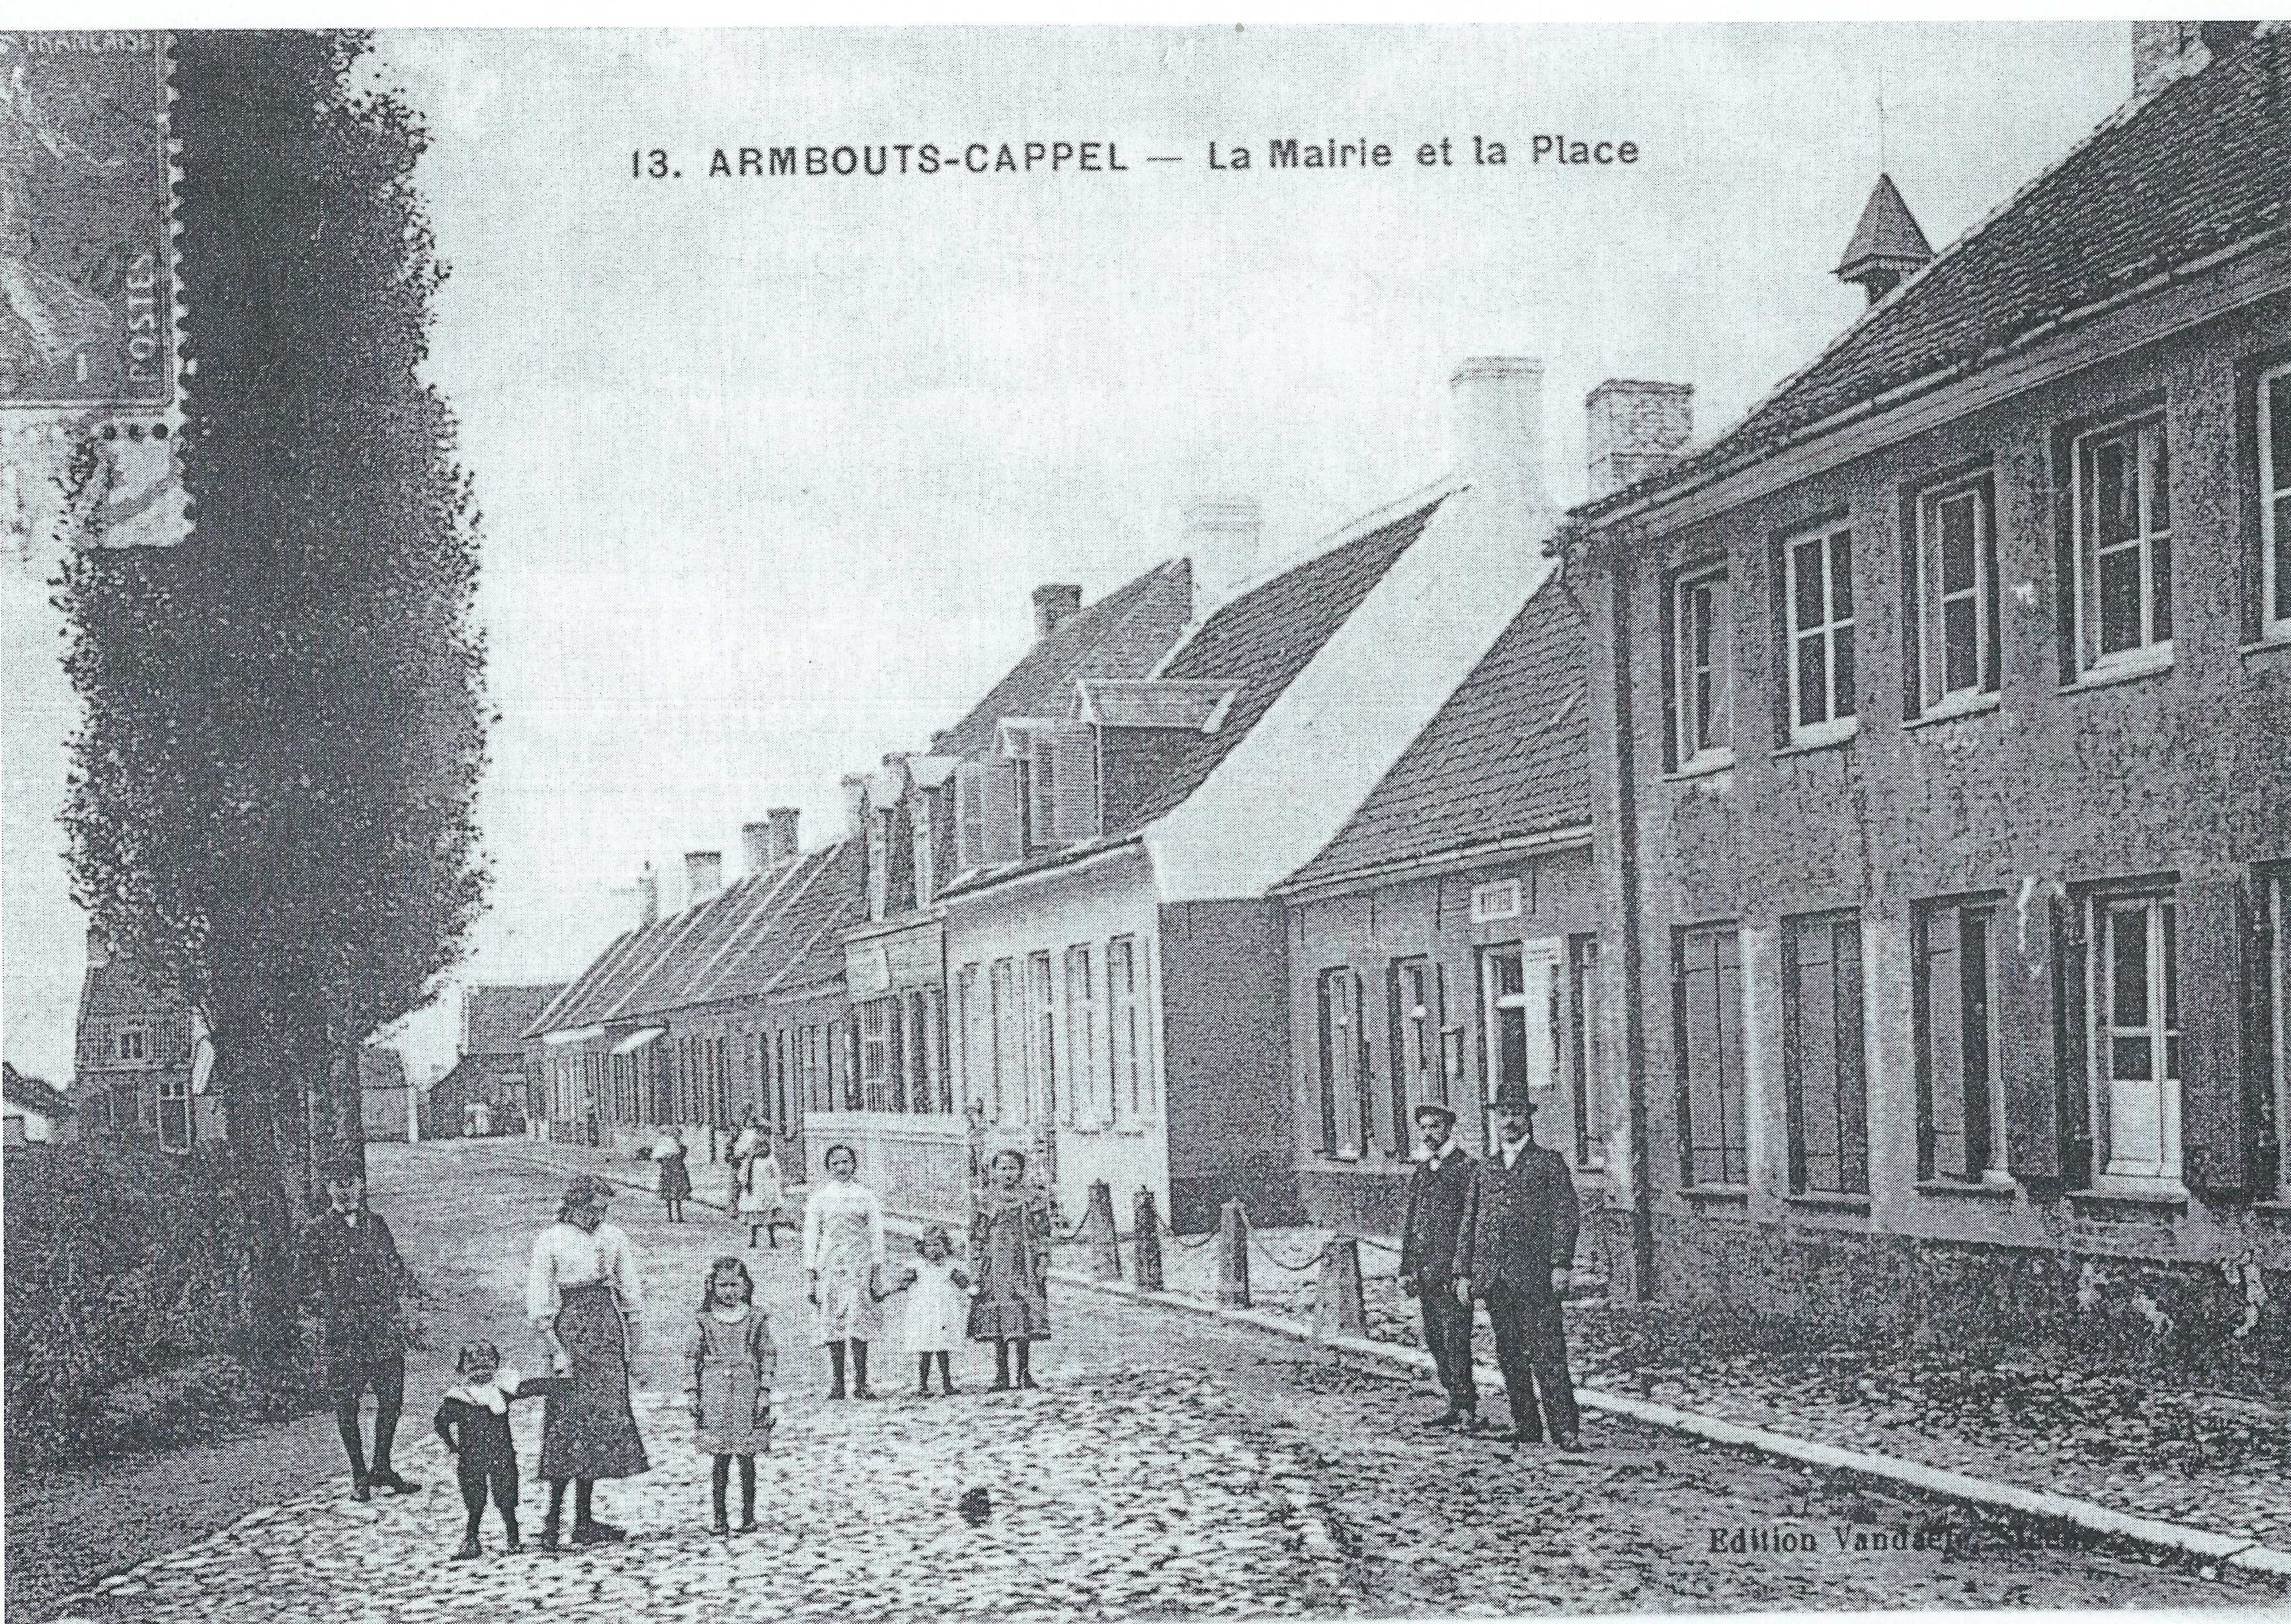 Rue de la Mairie